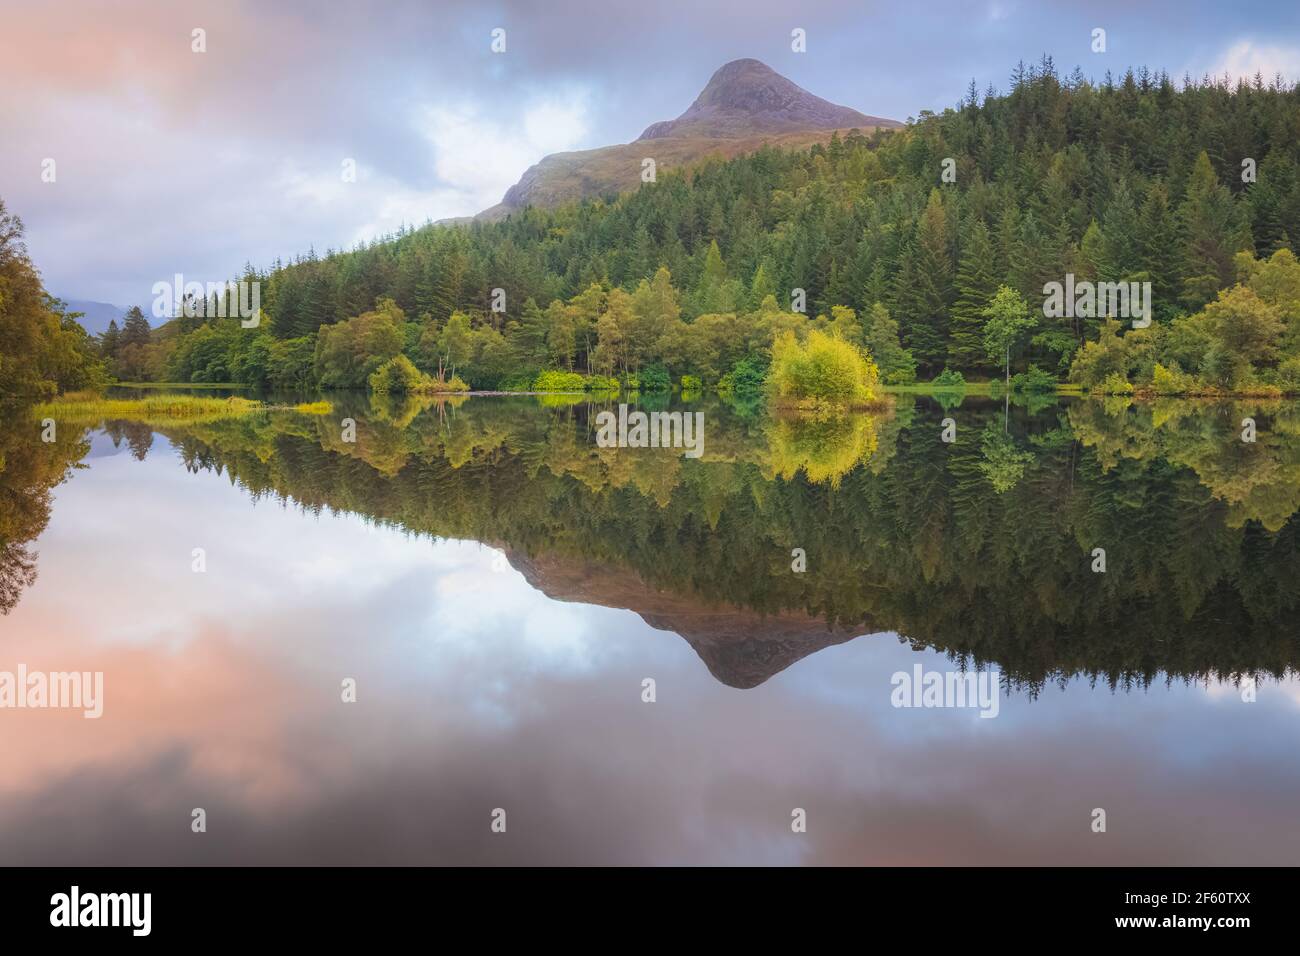 Calme, idyllique paysage de montagne lac reflet de la Pap de Glencoe sur Glencoe Lochan pendant le coucher du soleil ou le lever du soleil dans les Highlands écossais, en Écosse. Banque D'Images